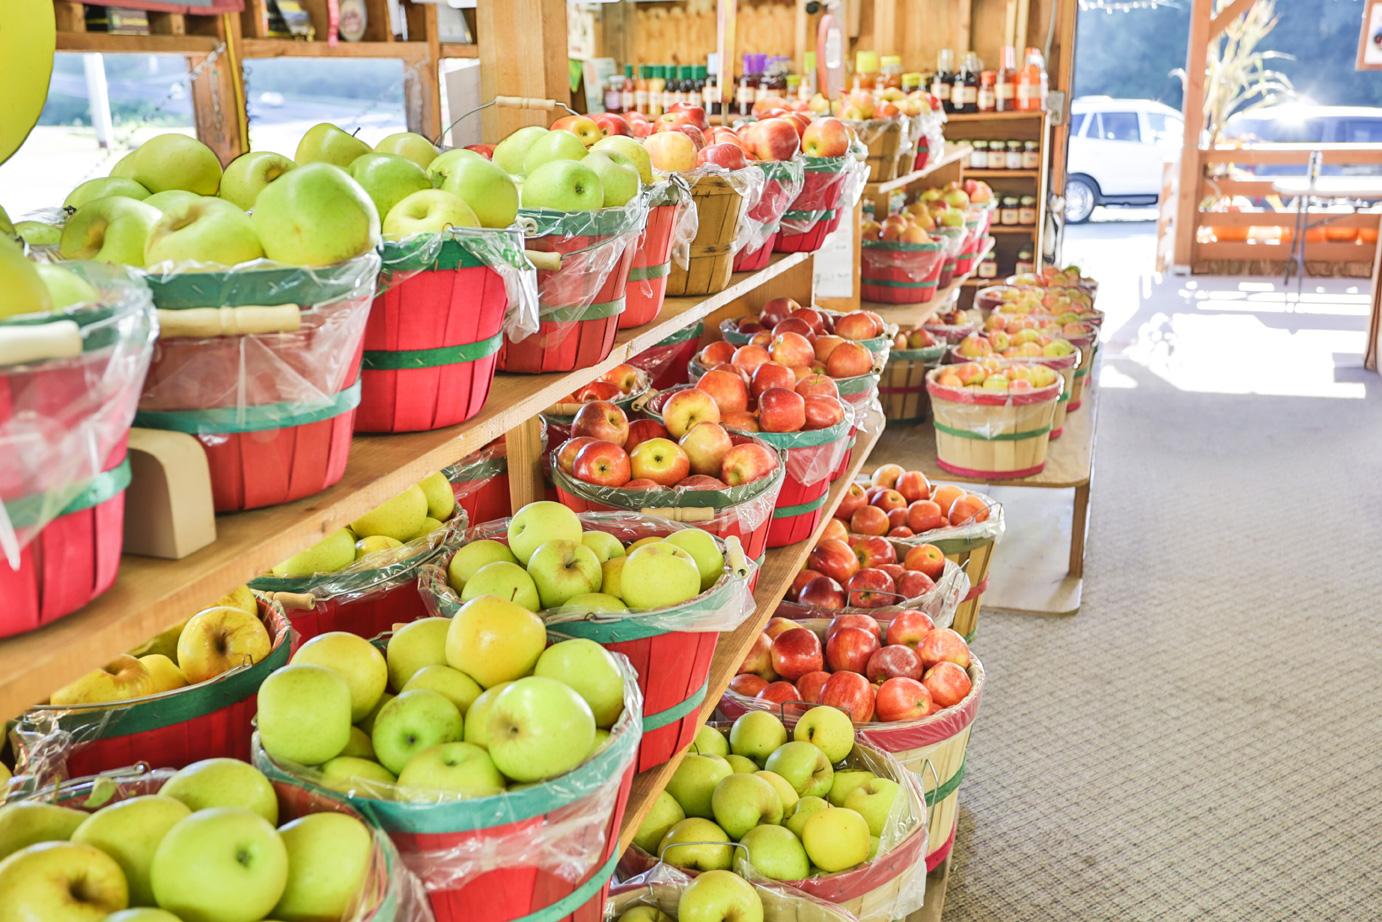 乔治亚州埃利杰红苹果仓库里的一篮子苹果